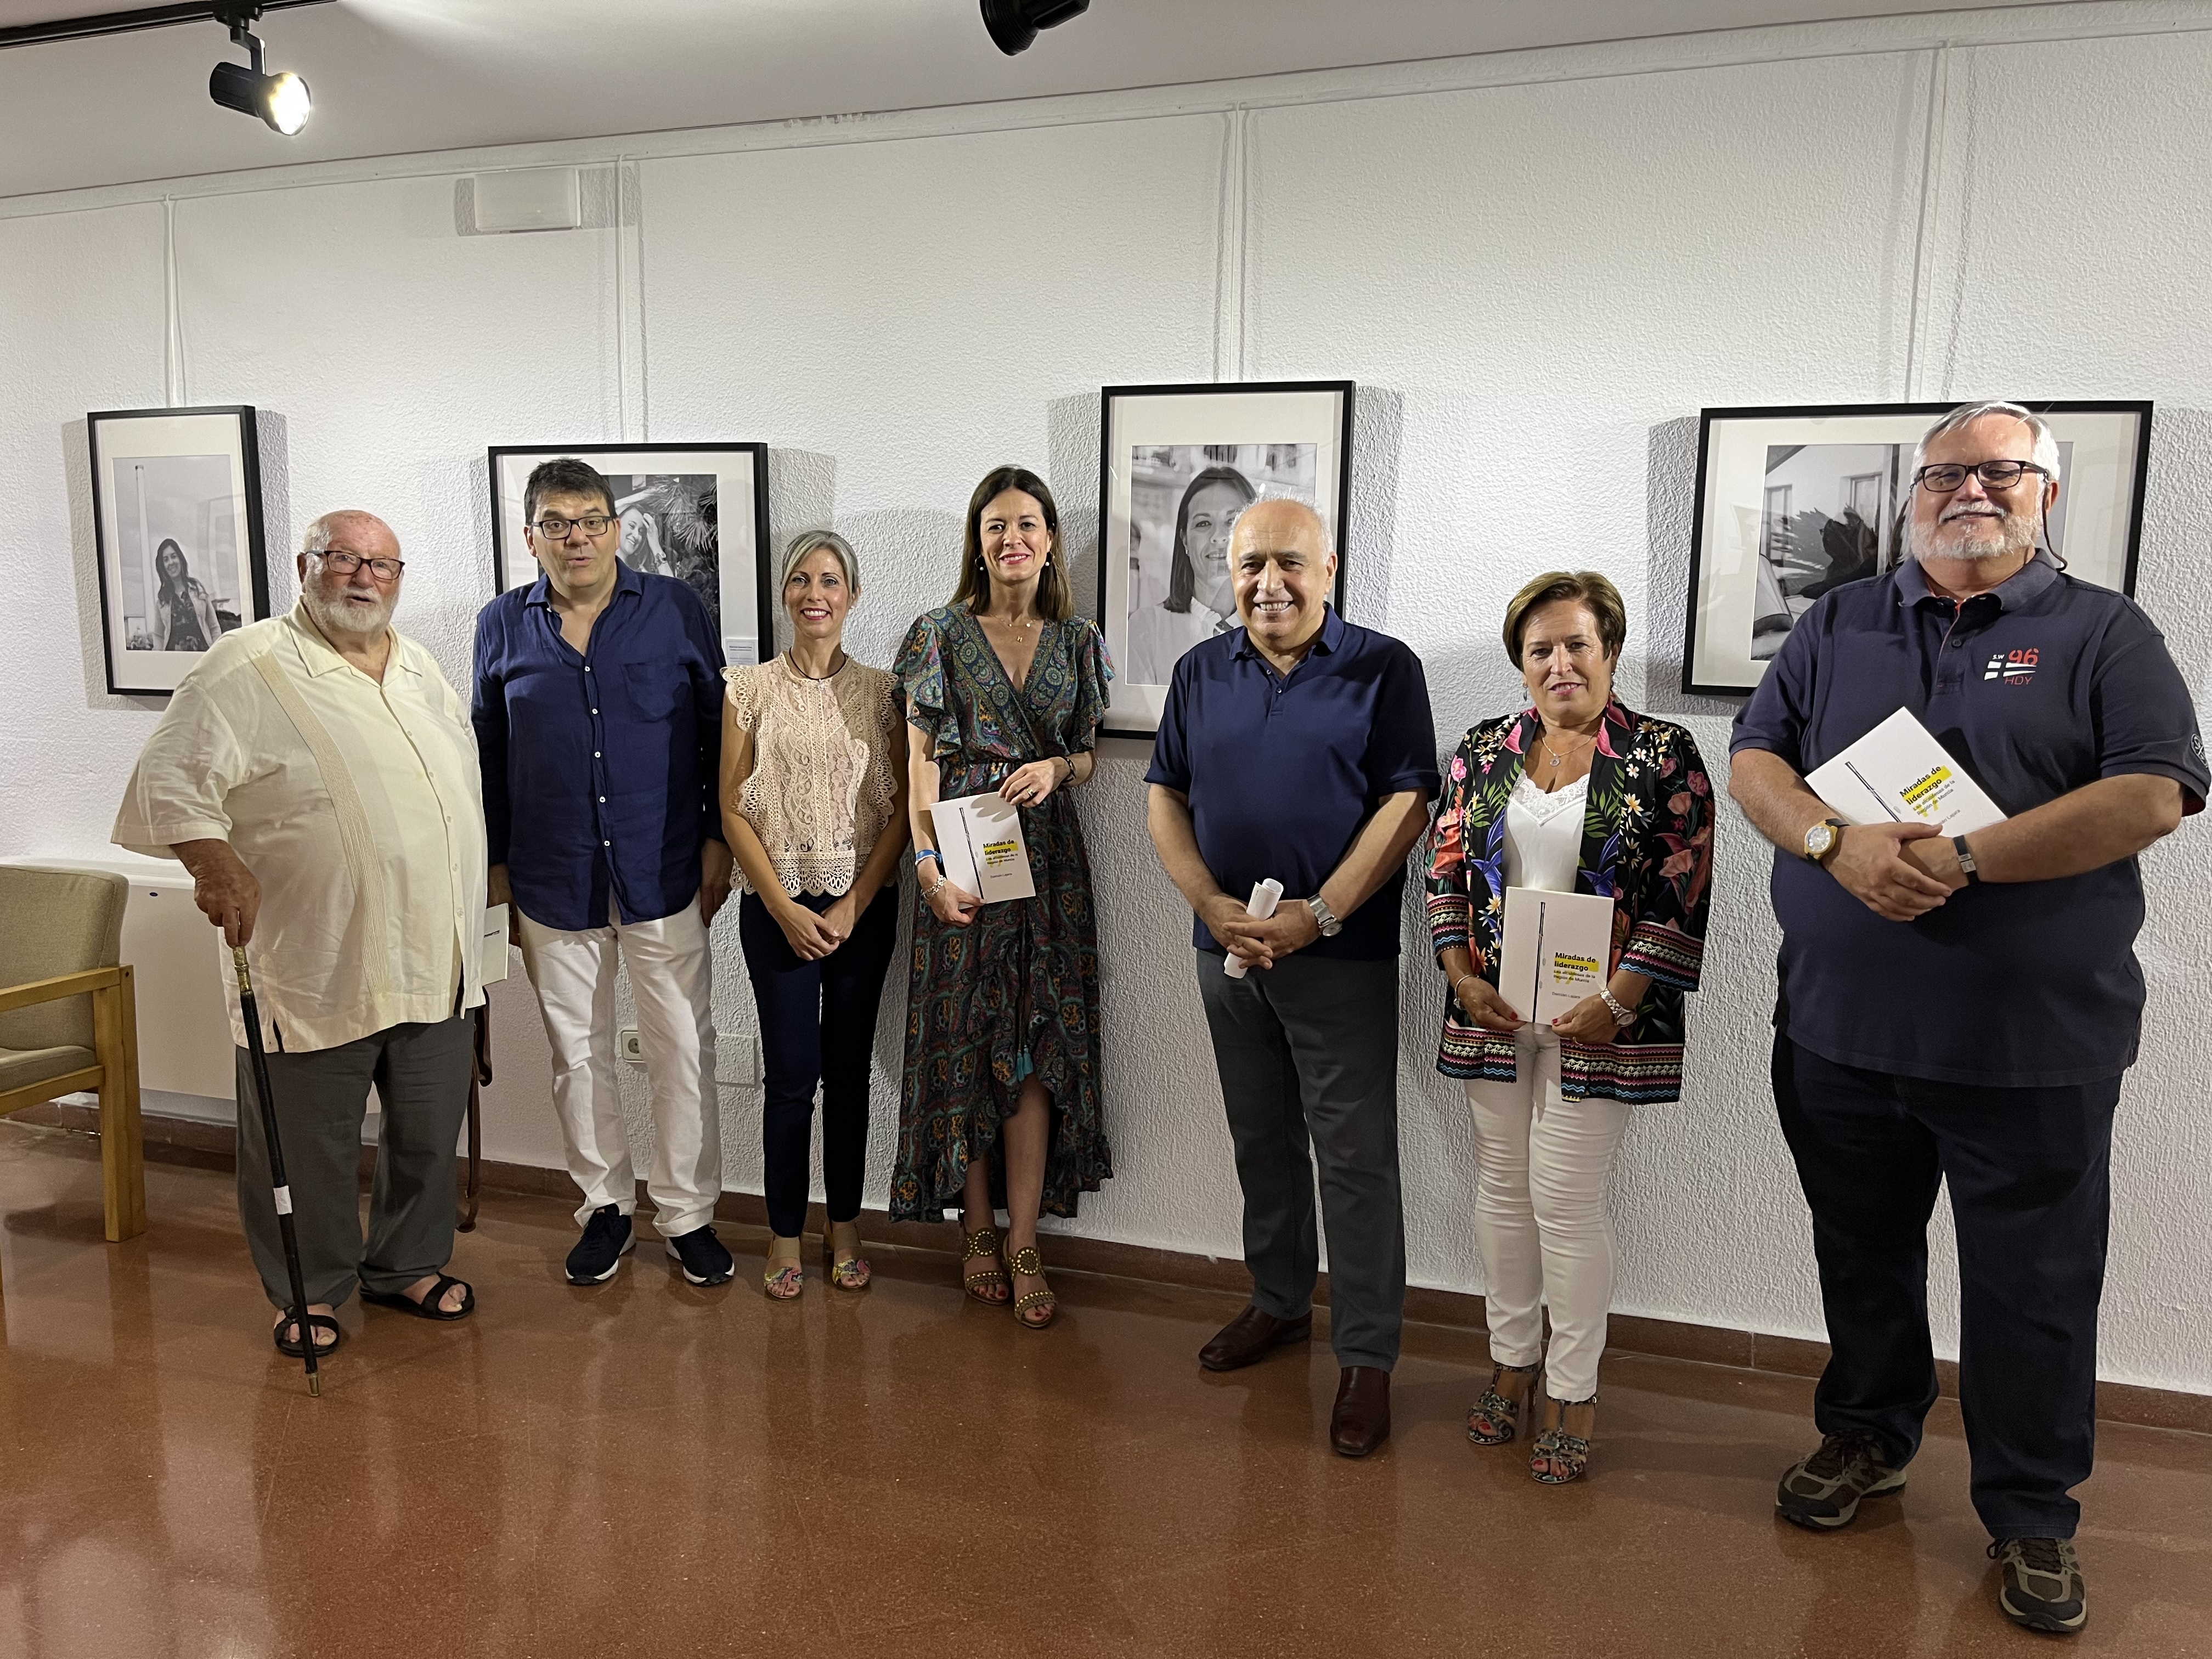 Águilas Radio: La Casa de Cultura acoge la exposición “Miradas de liderazgo”